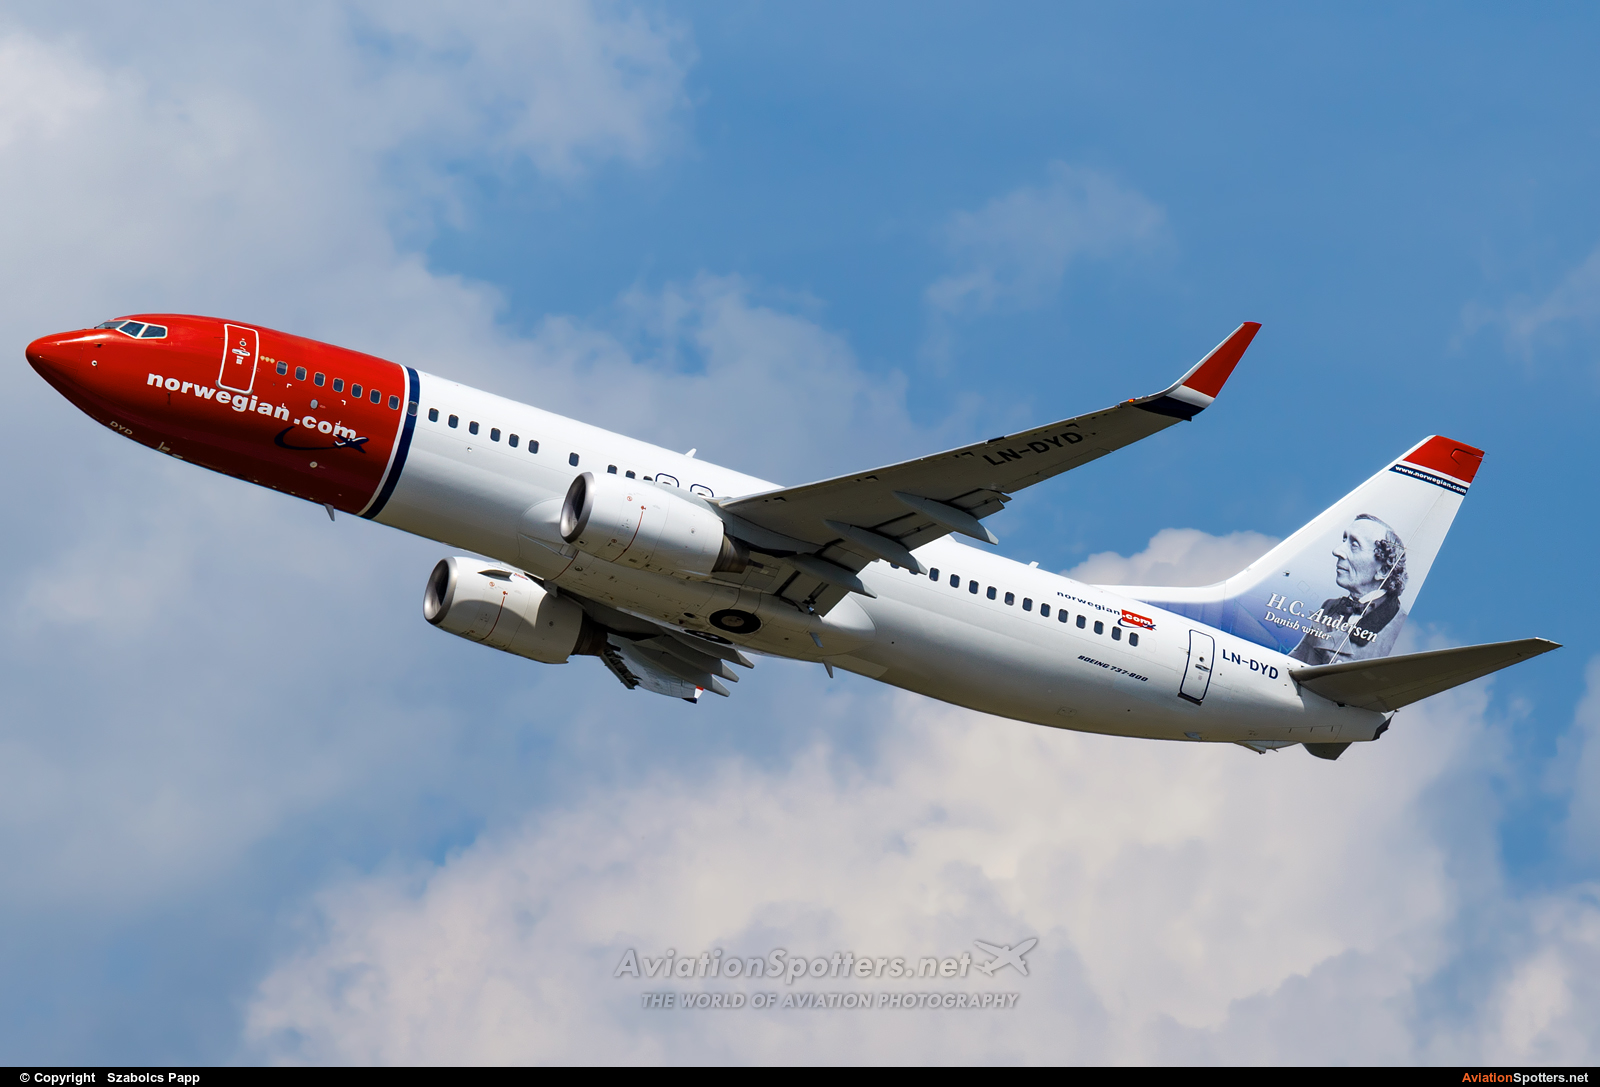 Norwegian Air Shuttle  -  737-800  (LN-DYD) By Szabolcs Papp (mr.szabi)